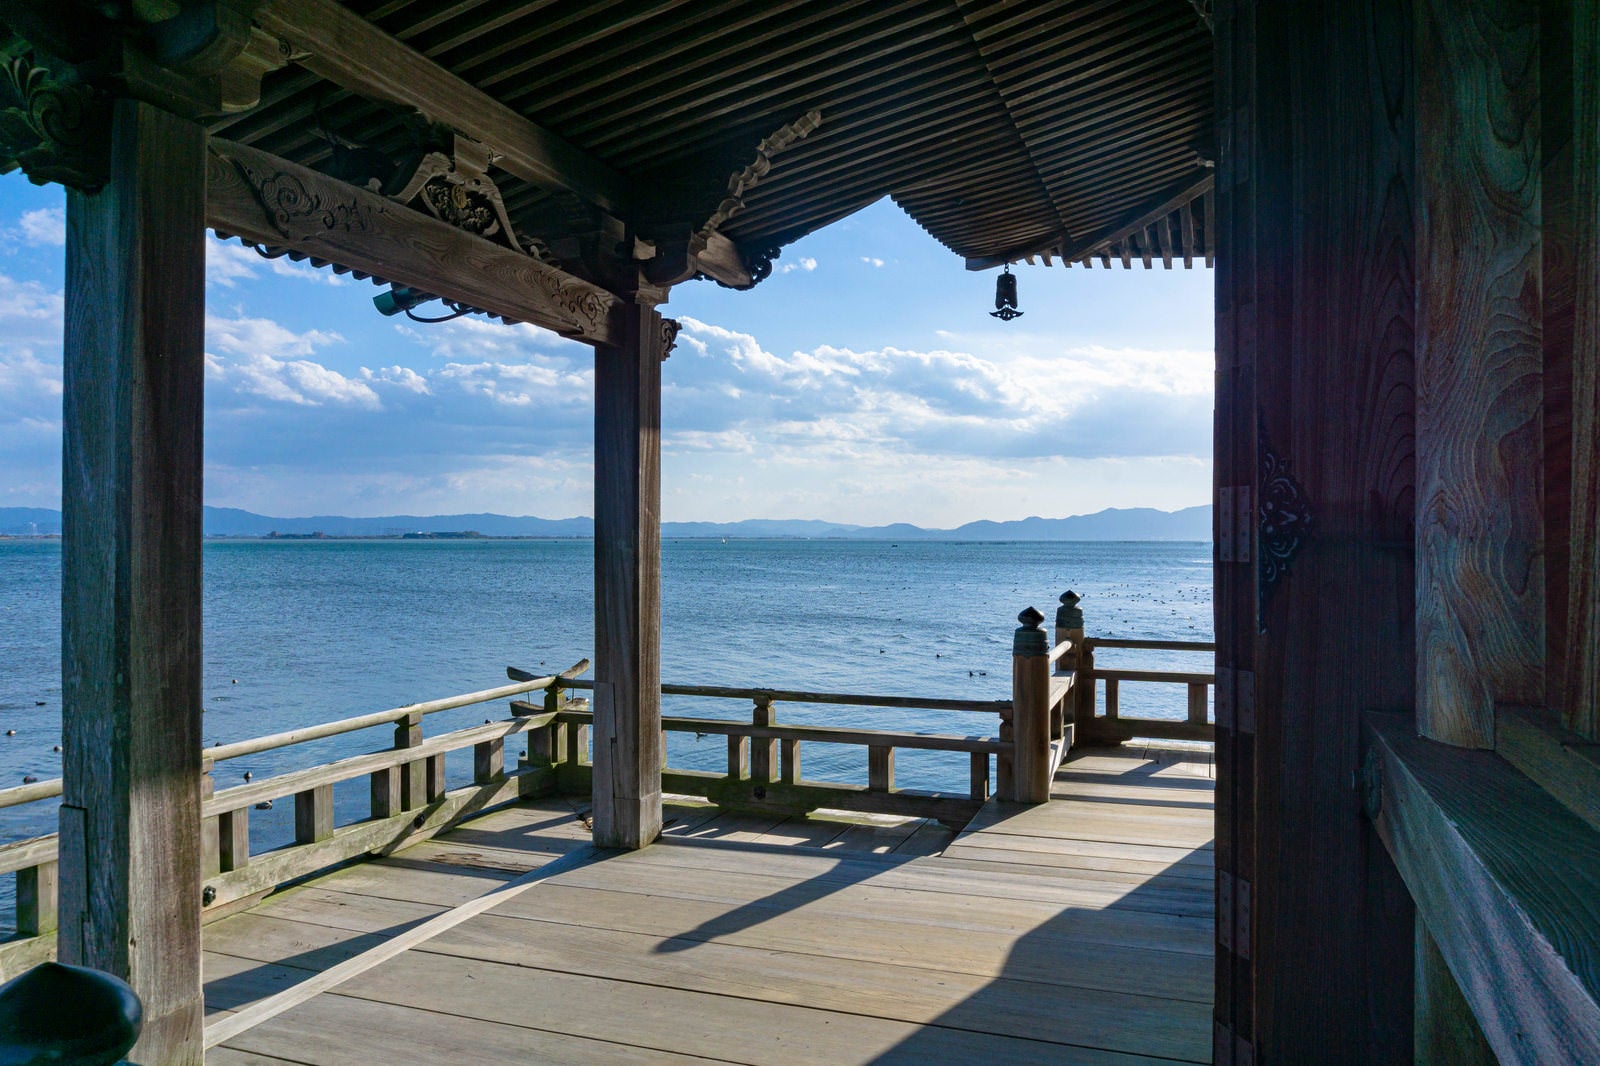 「琵琶湖の上に建つ浮御堂からの景色」の写真